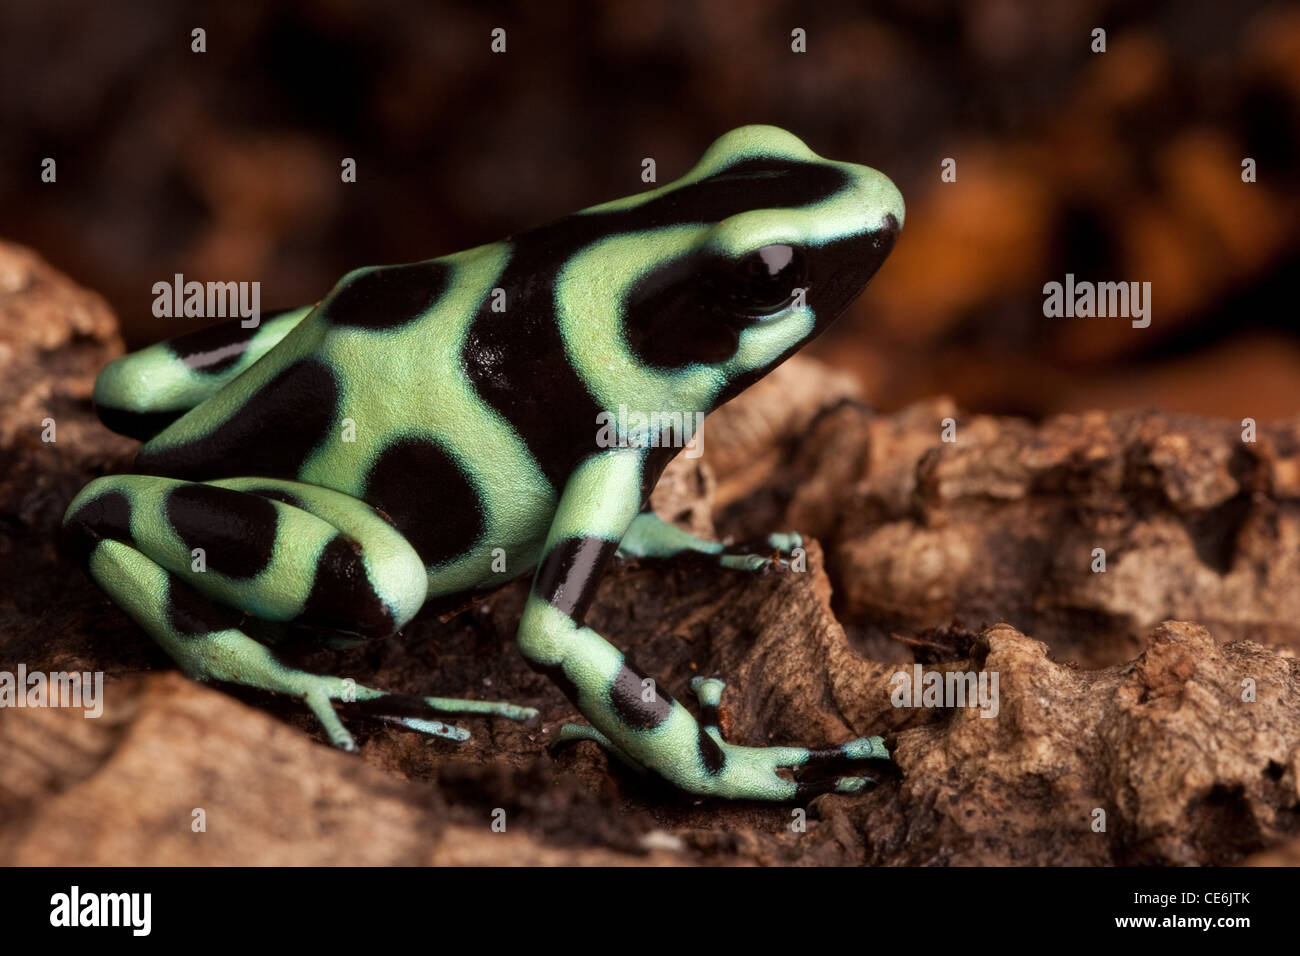 Goldene poison Dart Frosch Dendrobates Auratus giftige Tier mit hellen  warnenden Farben lebt im tropischen Regenwald von Panama Stockfotografie -  Alamy